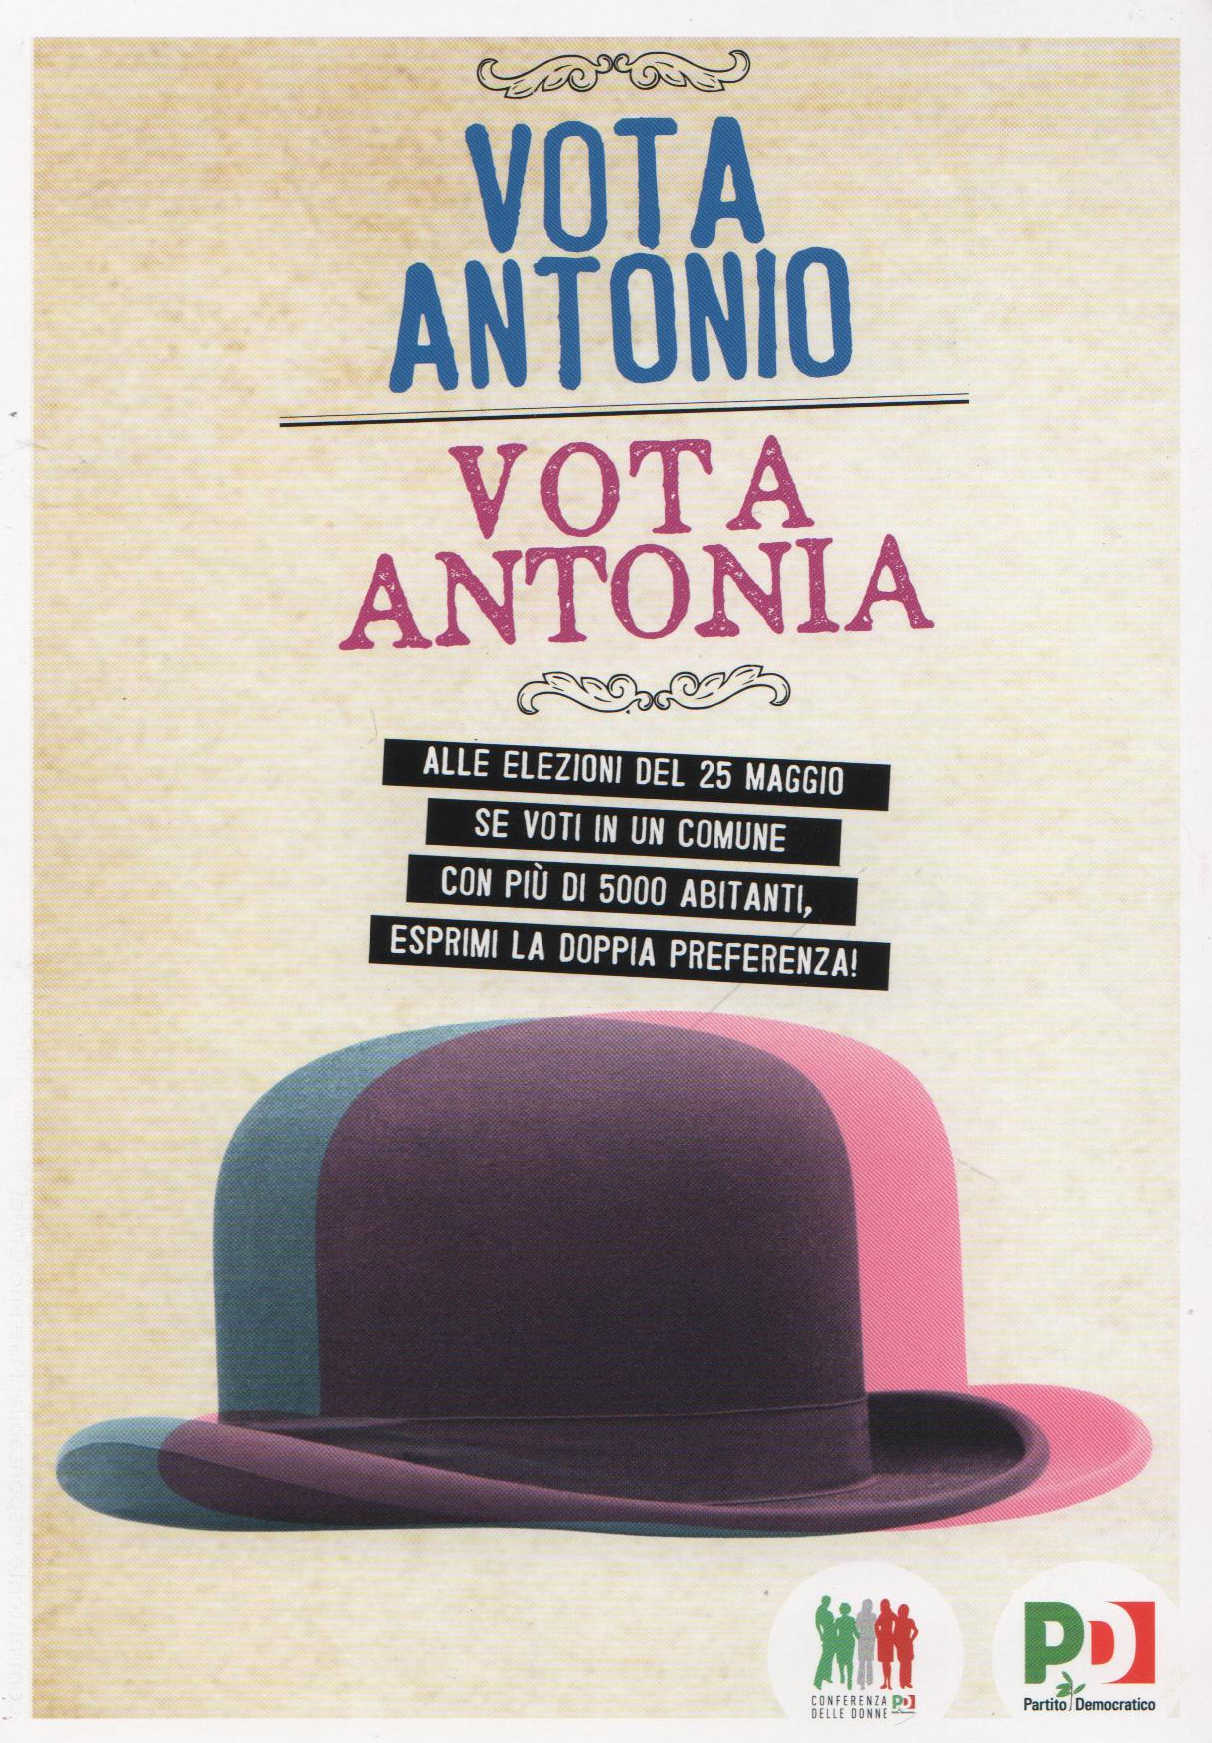 Vota Antonia, vota Antonio, campagna Pd per il voto di genere elezioni amministrative 2014.